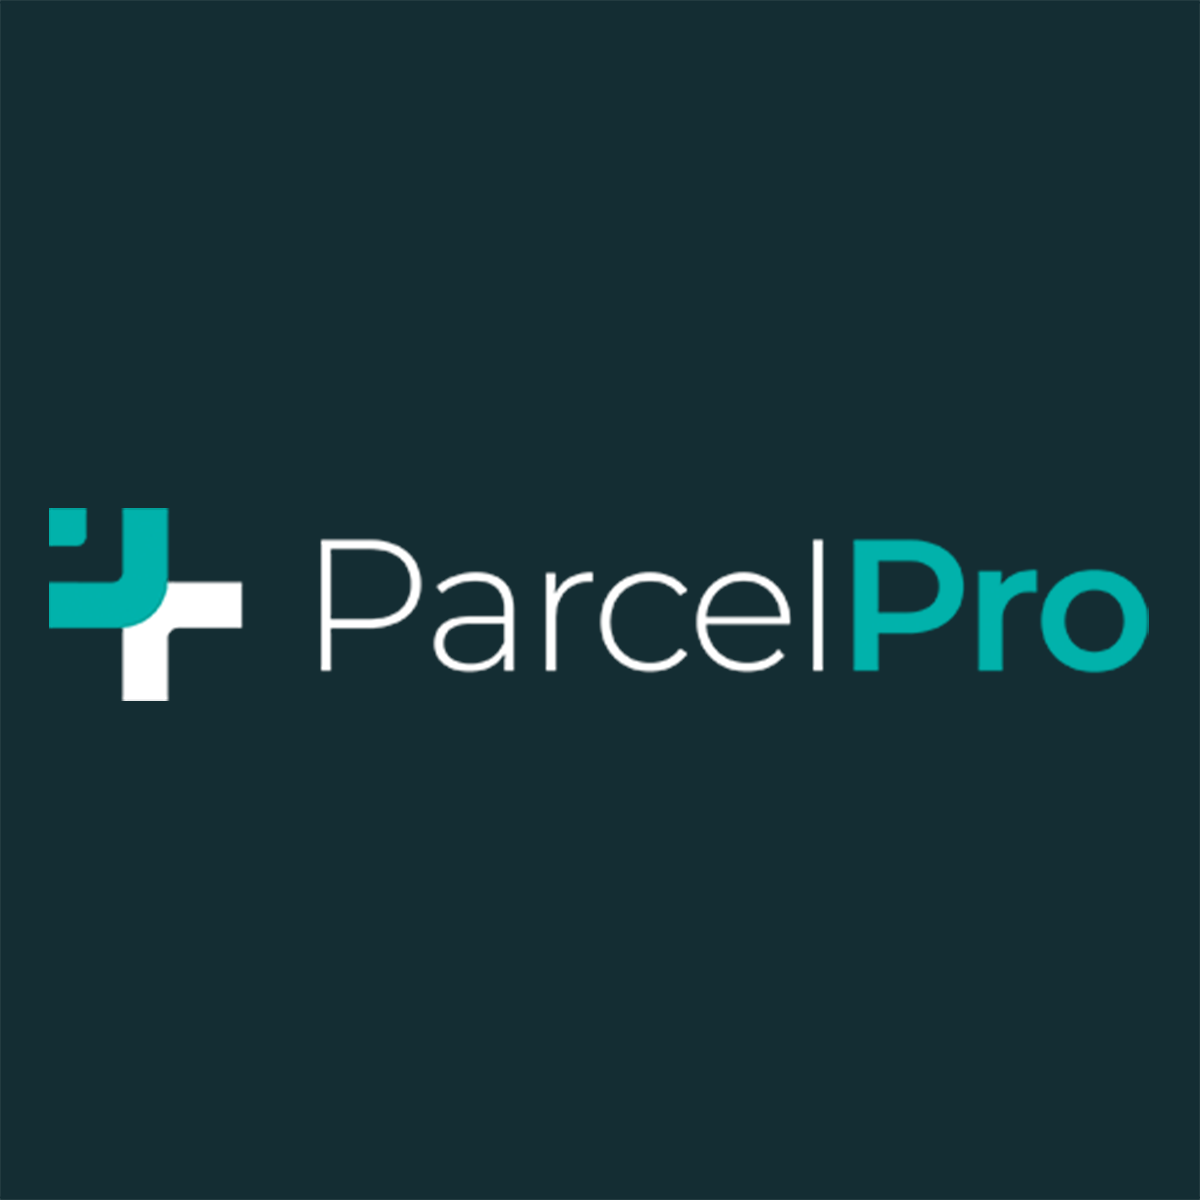 Parcel Pro Shopify App